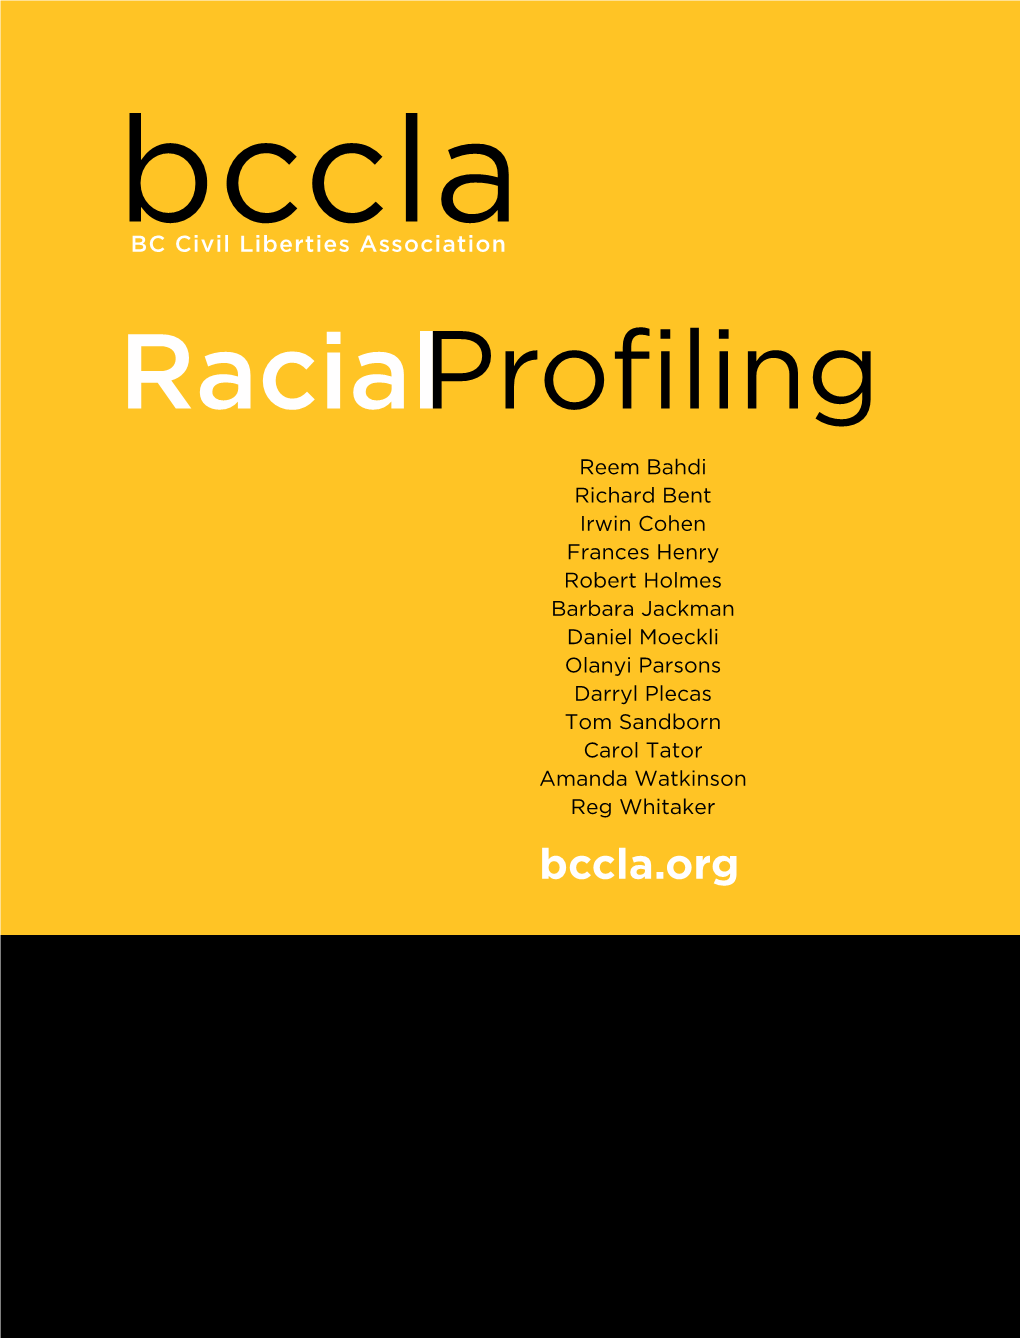 2007-BCCLA-Report-Racial-Profiling.Pdf